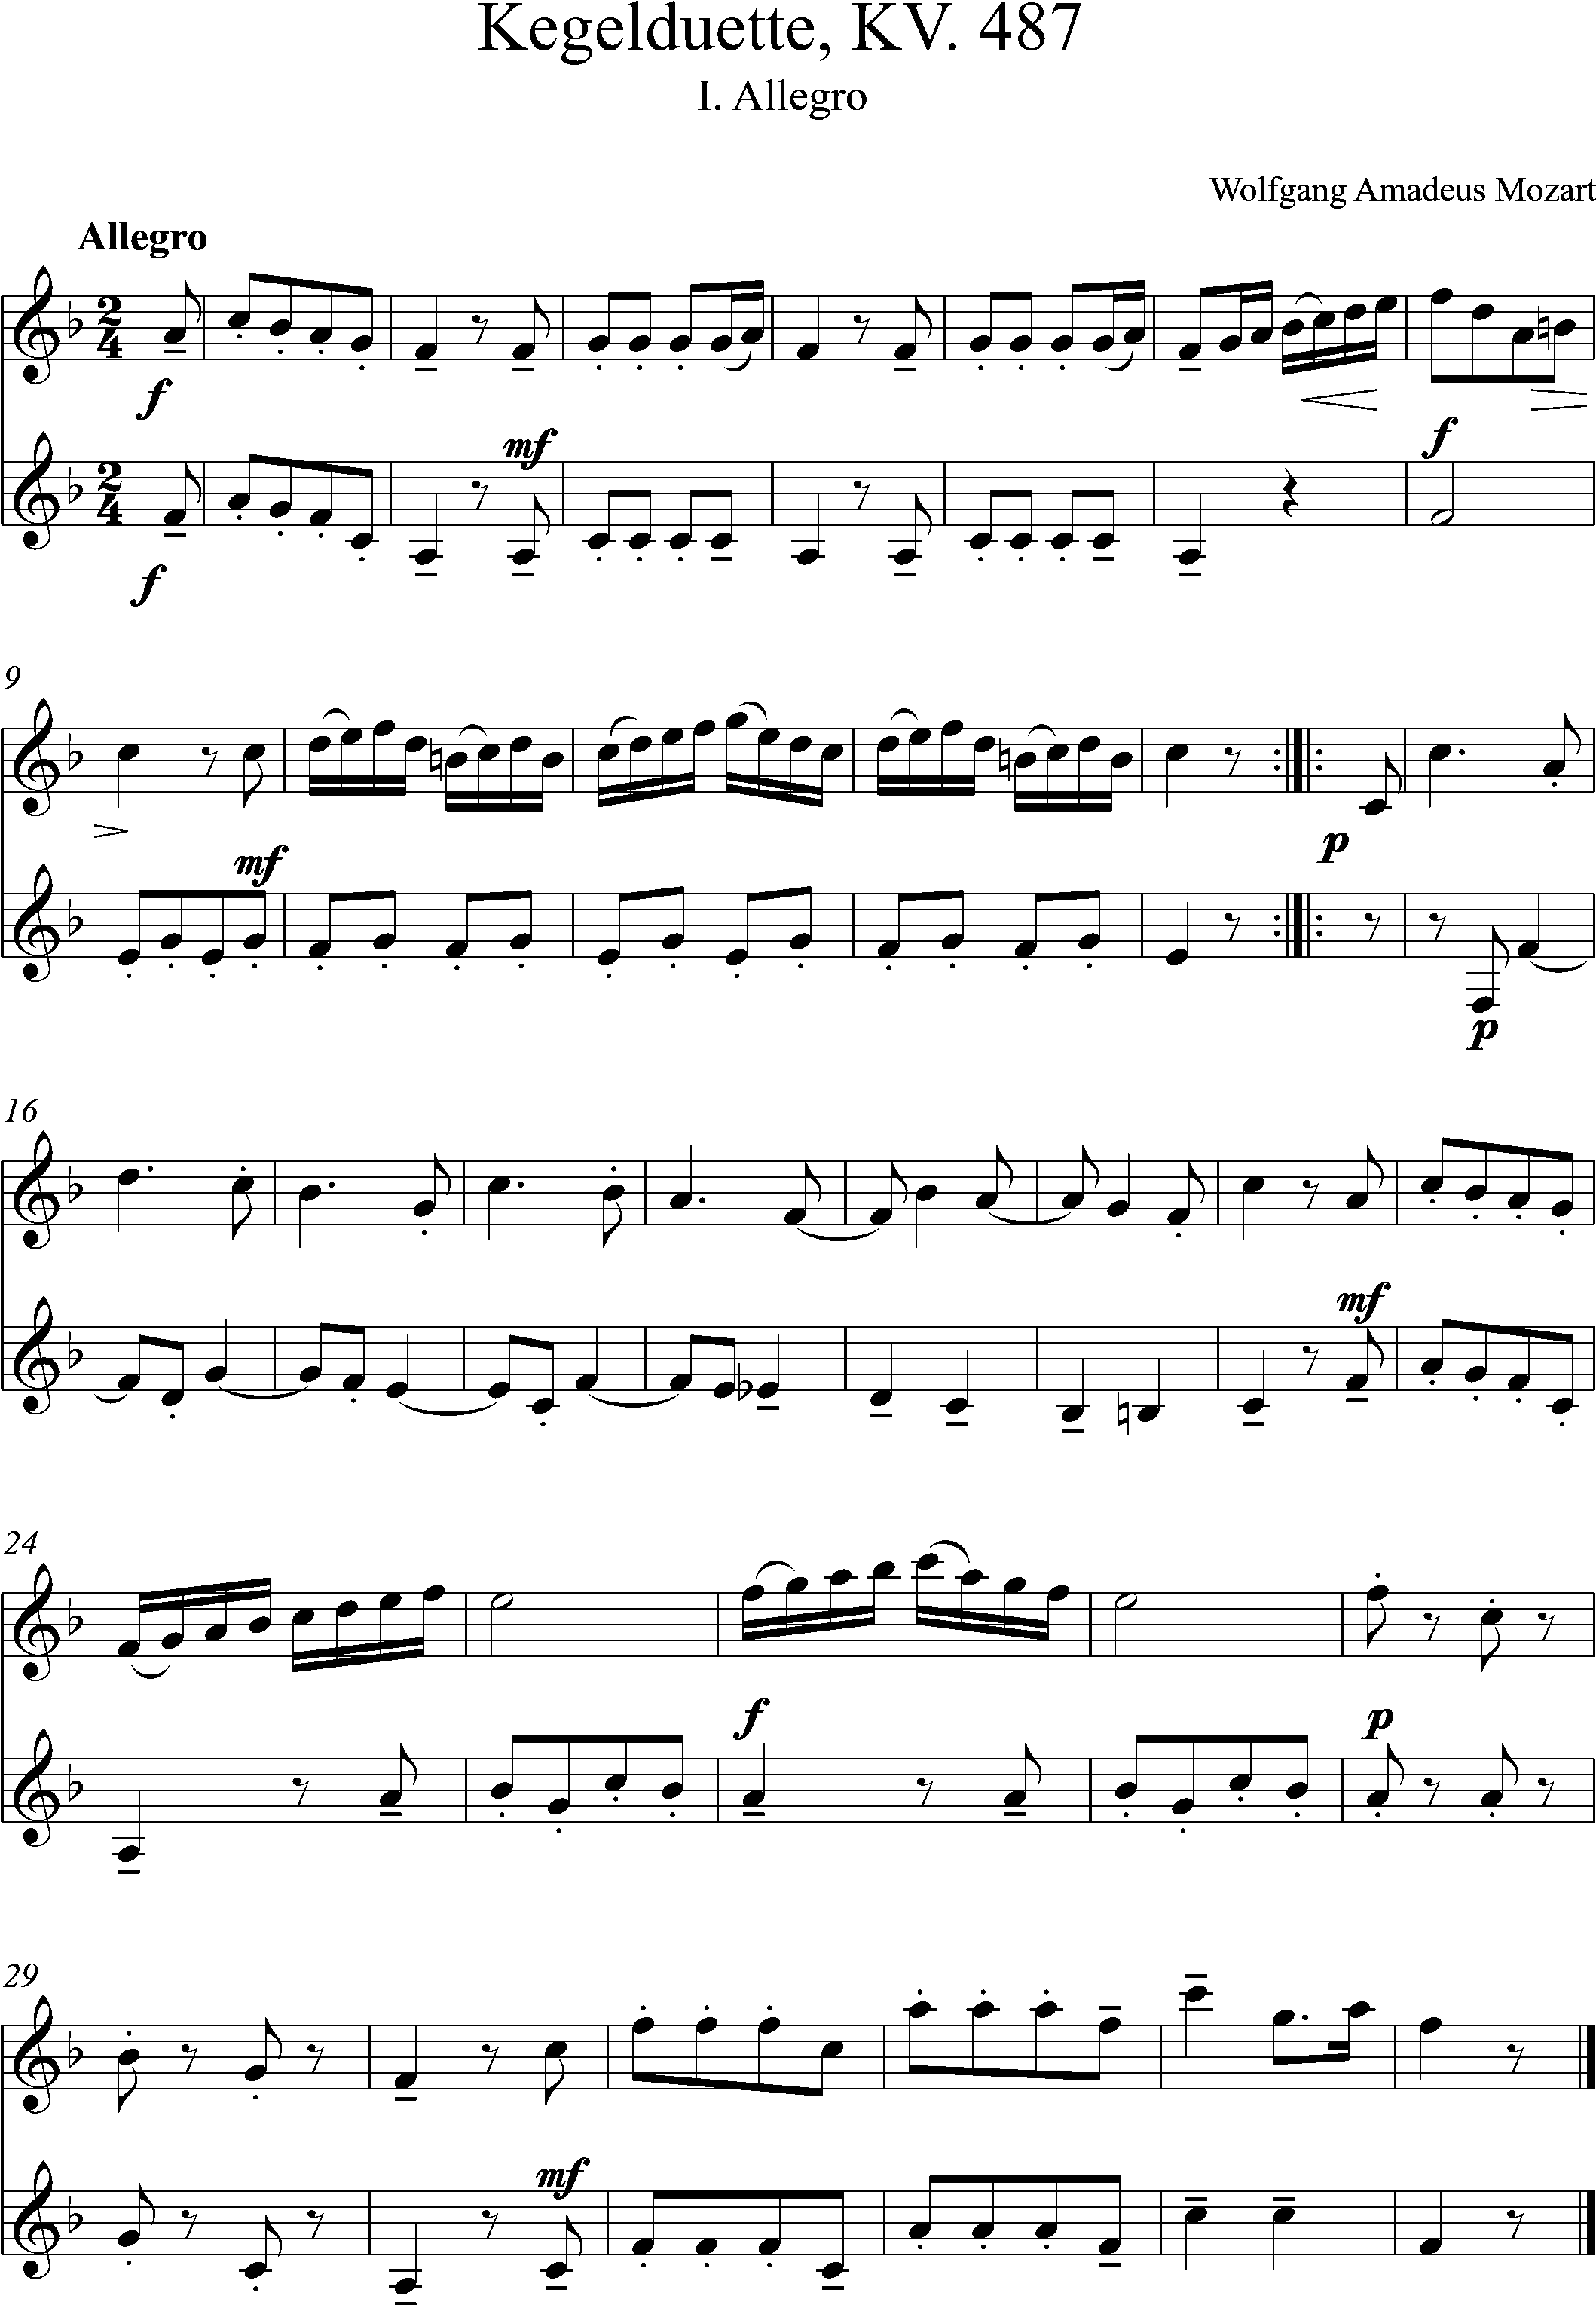 Kegelduette, KV 487, 1-Allegro